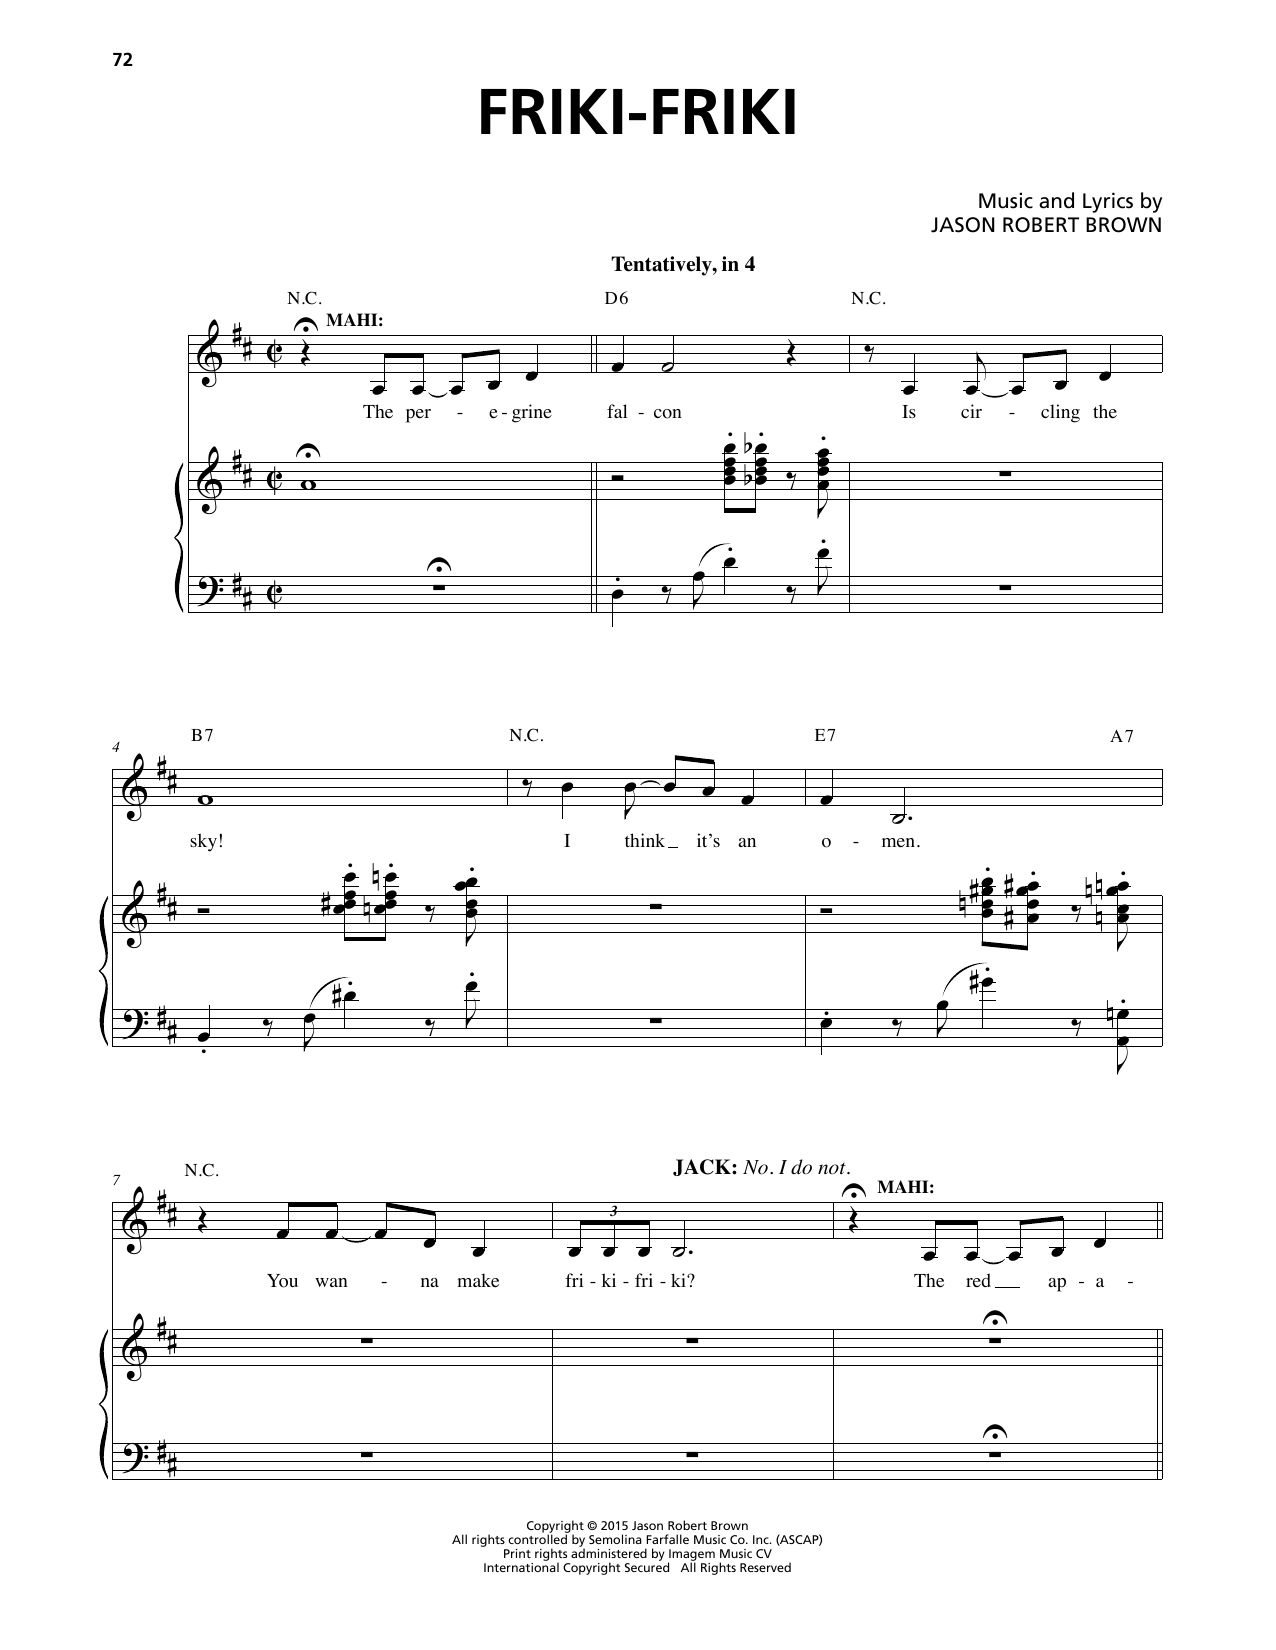 Jason Robert Brown Friki-Friki (from Honeymoon in Vegas) Sheet Music Notes & Chords for Piano & Vocal - Download or Print PDF